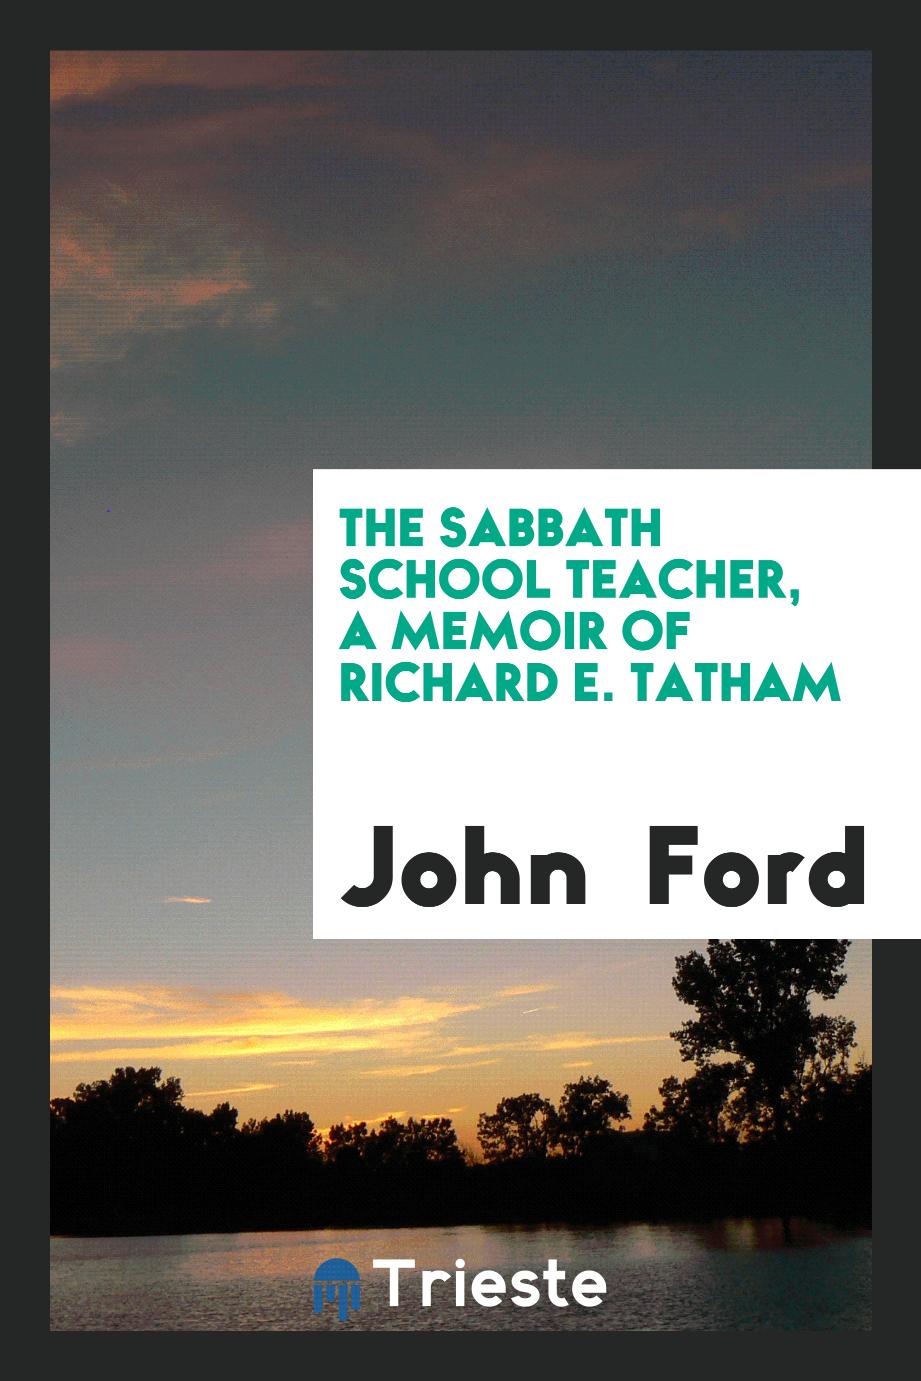 The sabbath school teacher, a memoir of Richard E. Tatham